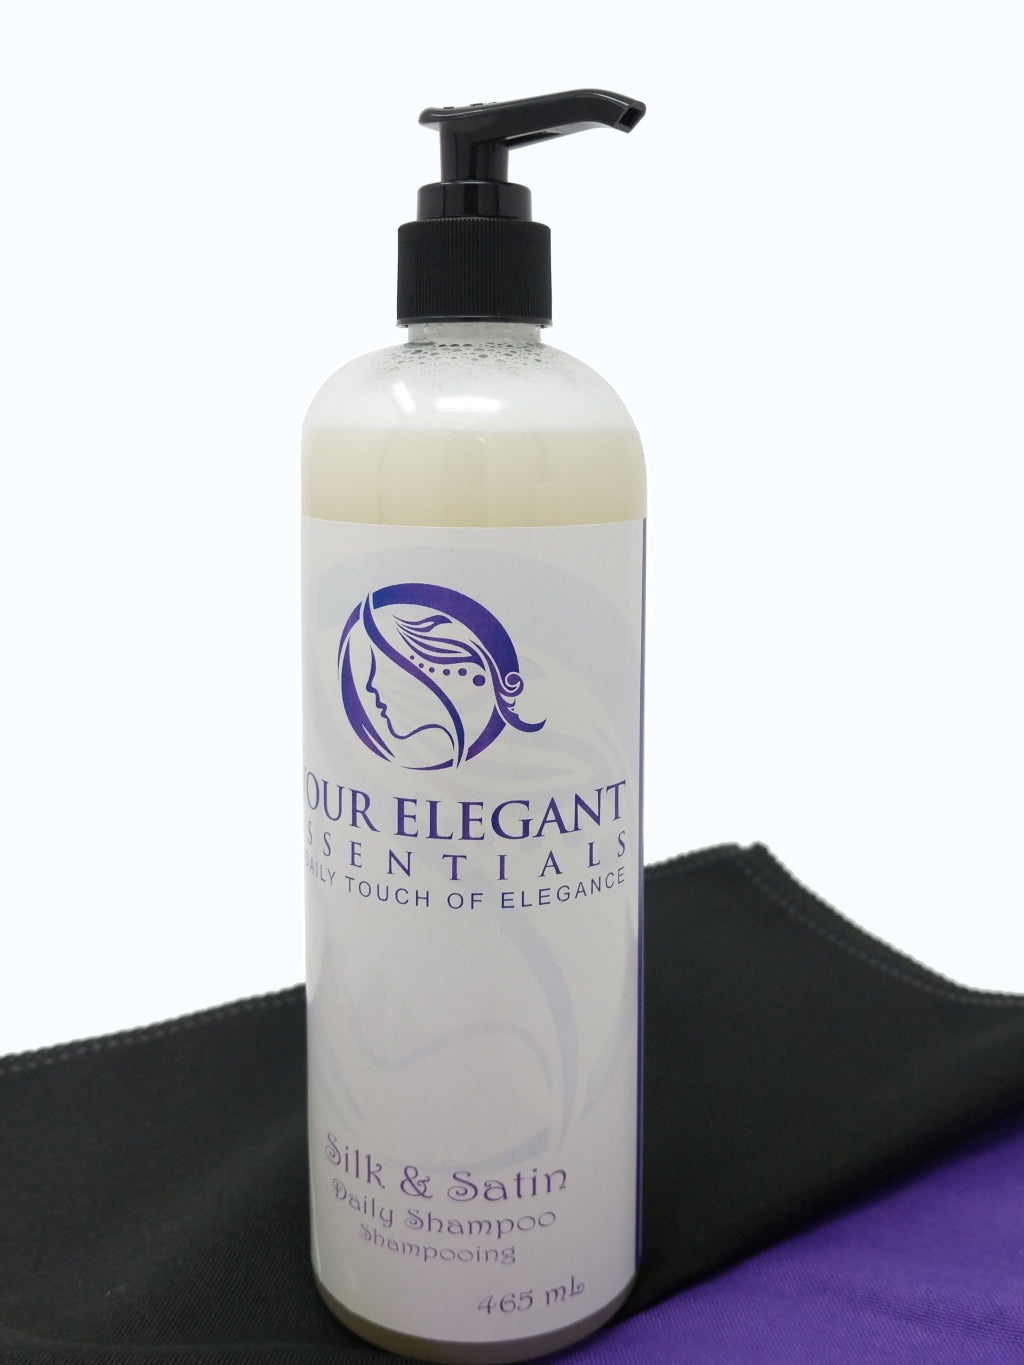 Silk & Satin Daily Shampoo